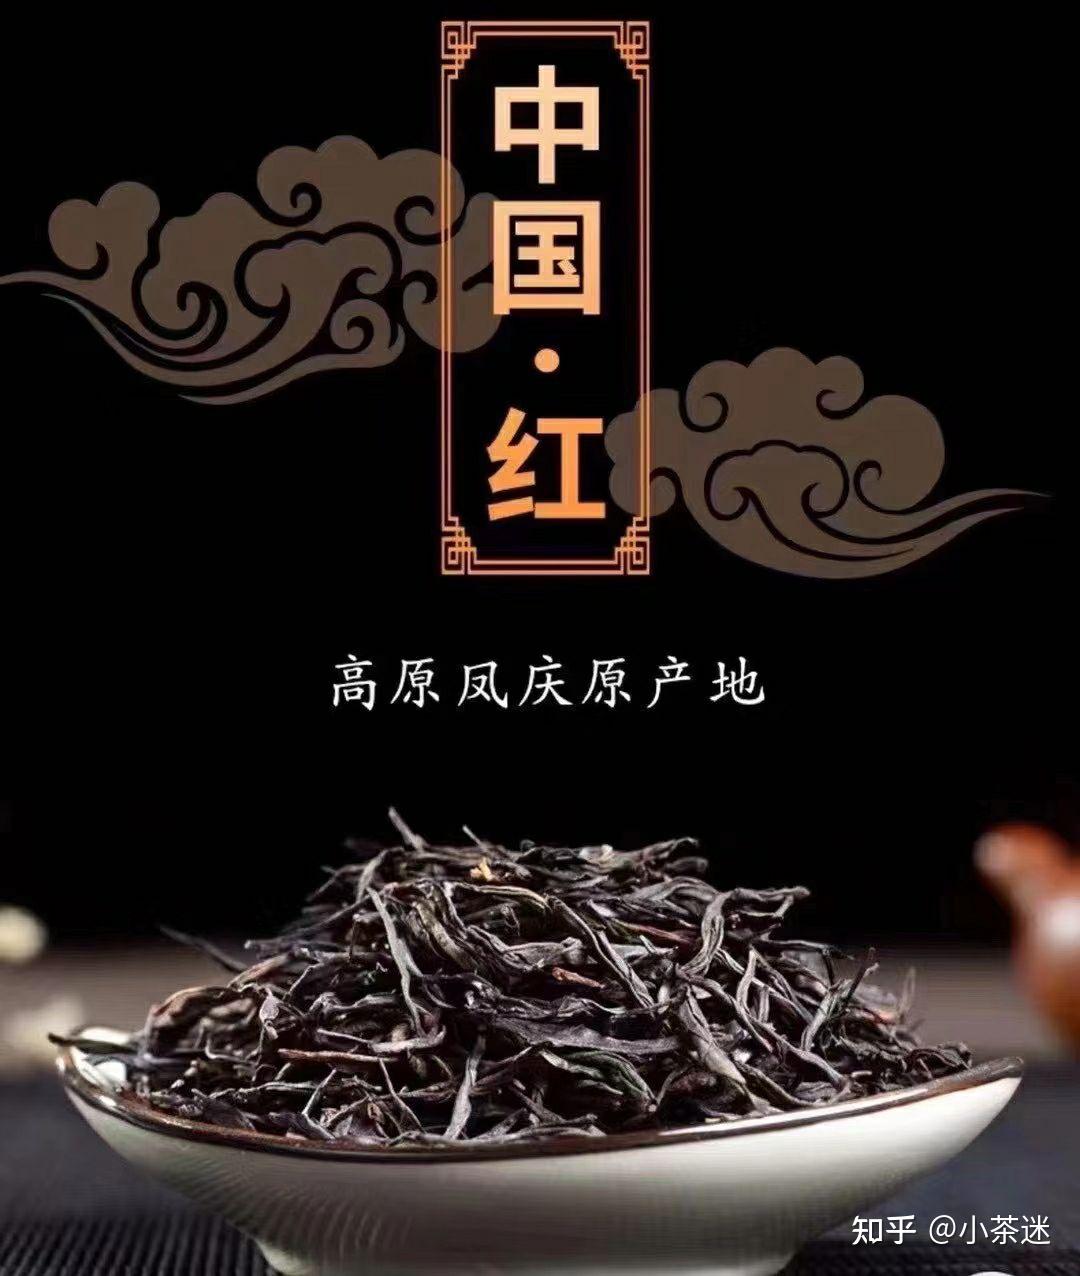 中国红是凤庆一种特殊红茶的美称